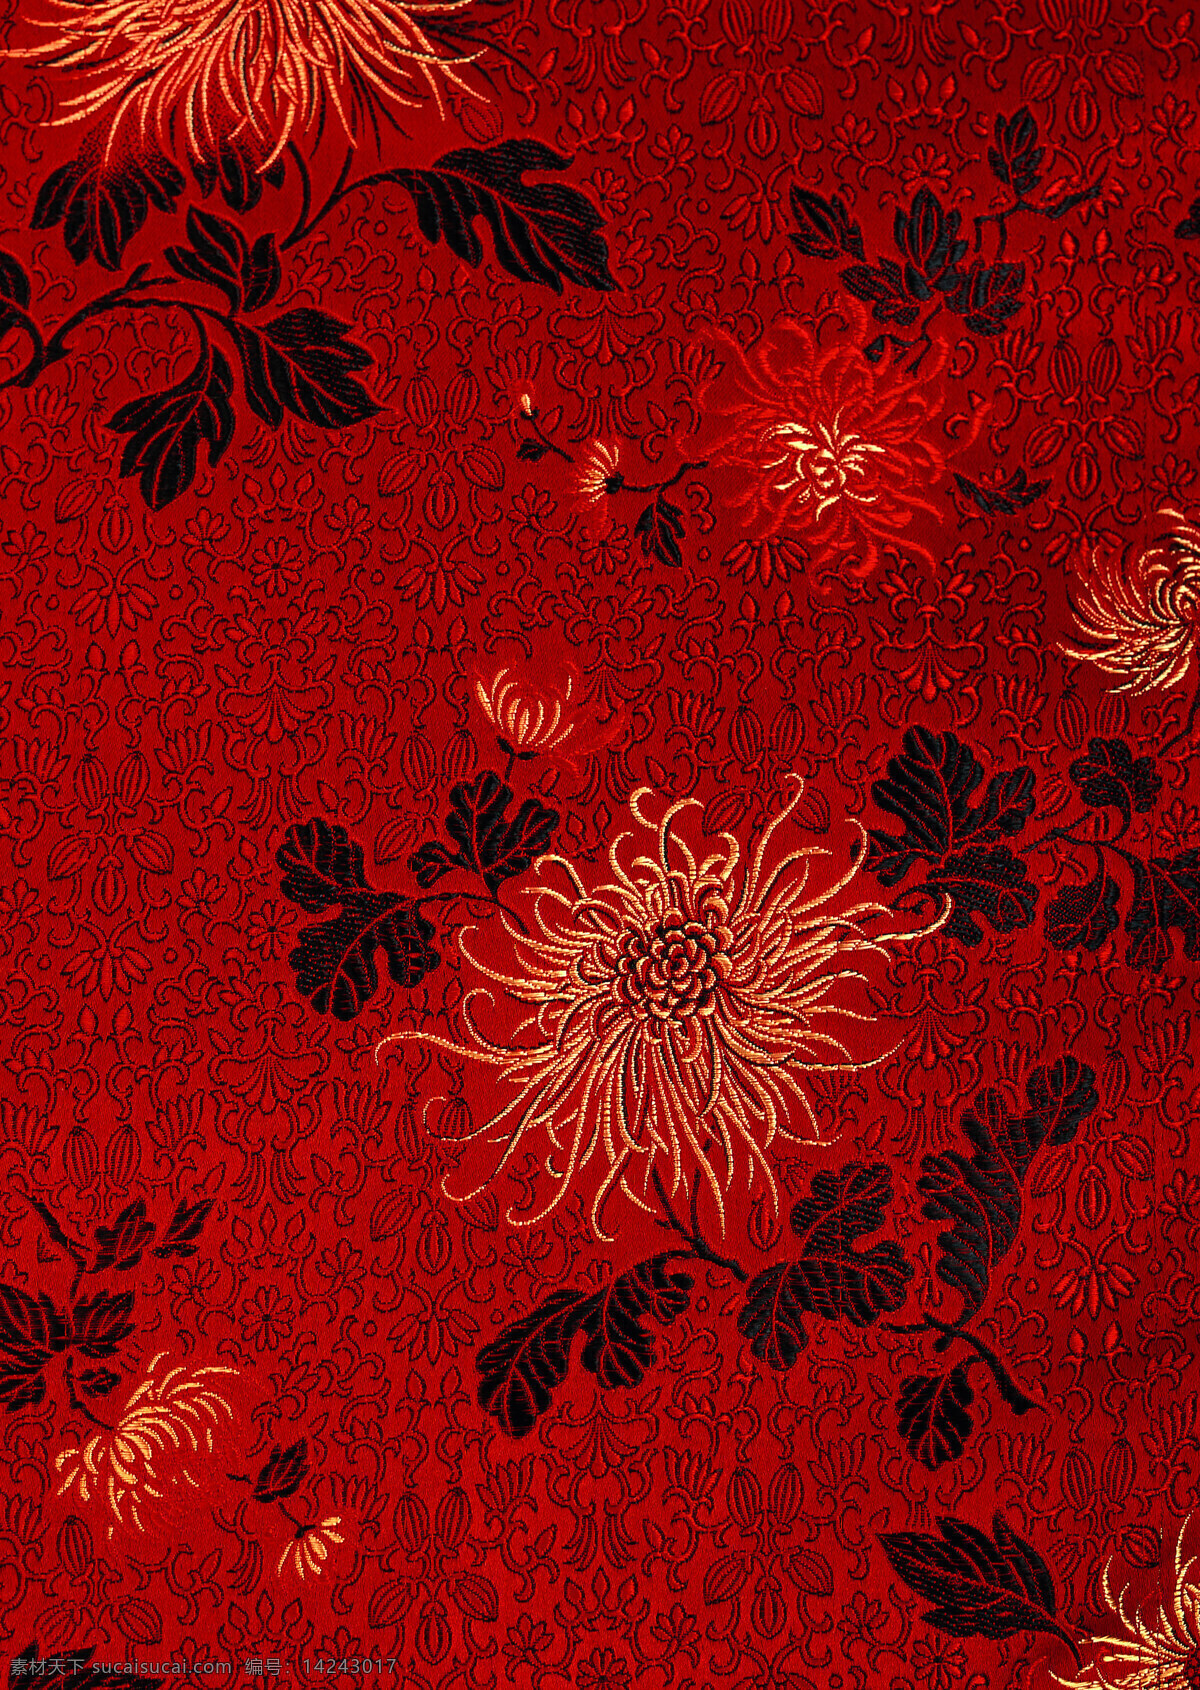 布料 旗袍 丝绸 针织 刺绣 古典 典雅 中国风 文化 高清 人文素材 文化艺术 传统文化